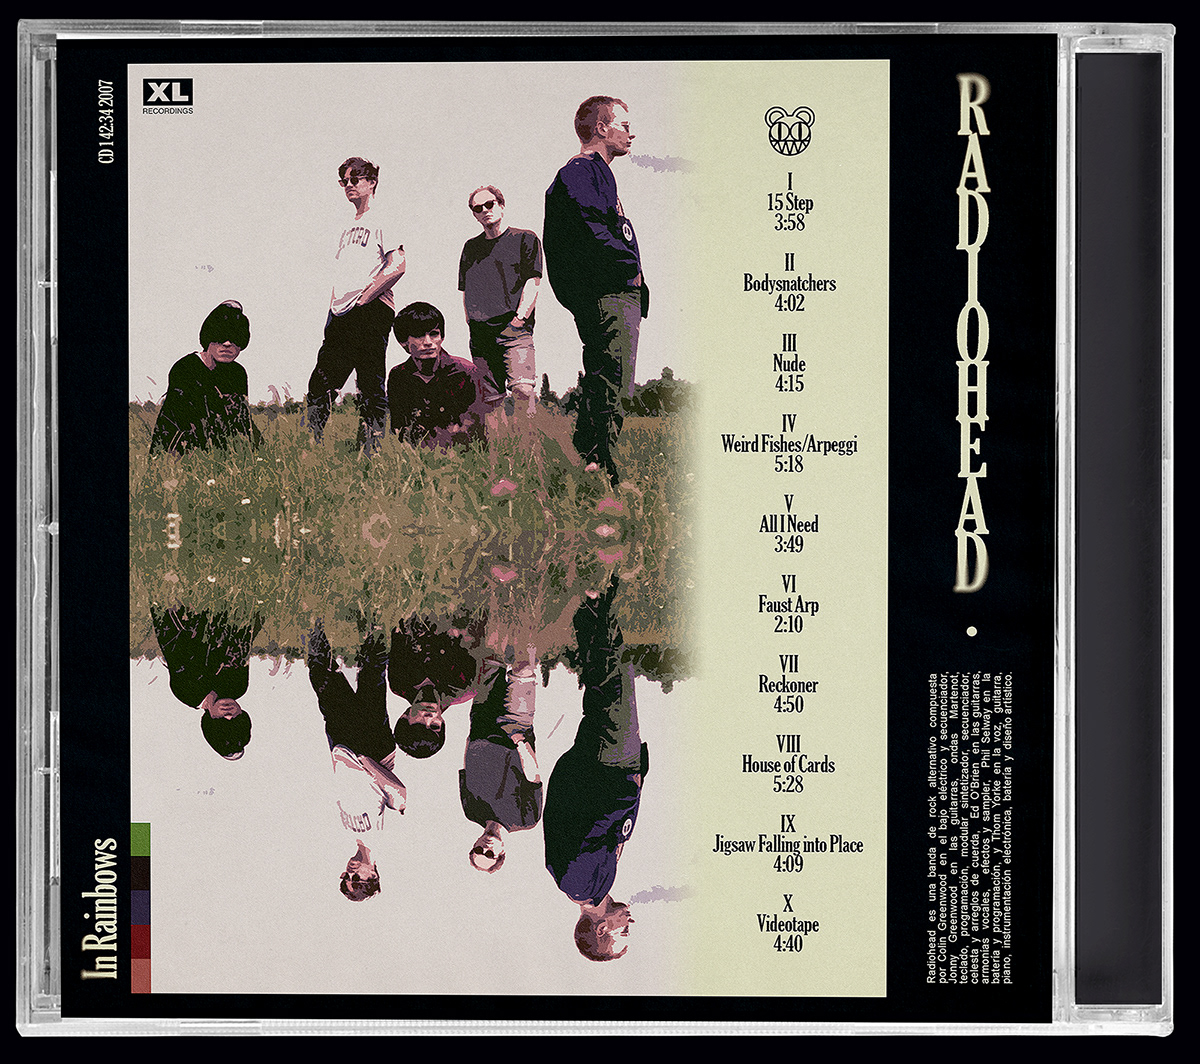 cassette Radiohead album cover CD cover cd mockup Music Artwork Cd designs packaging cd song cover Song Artwork